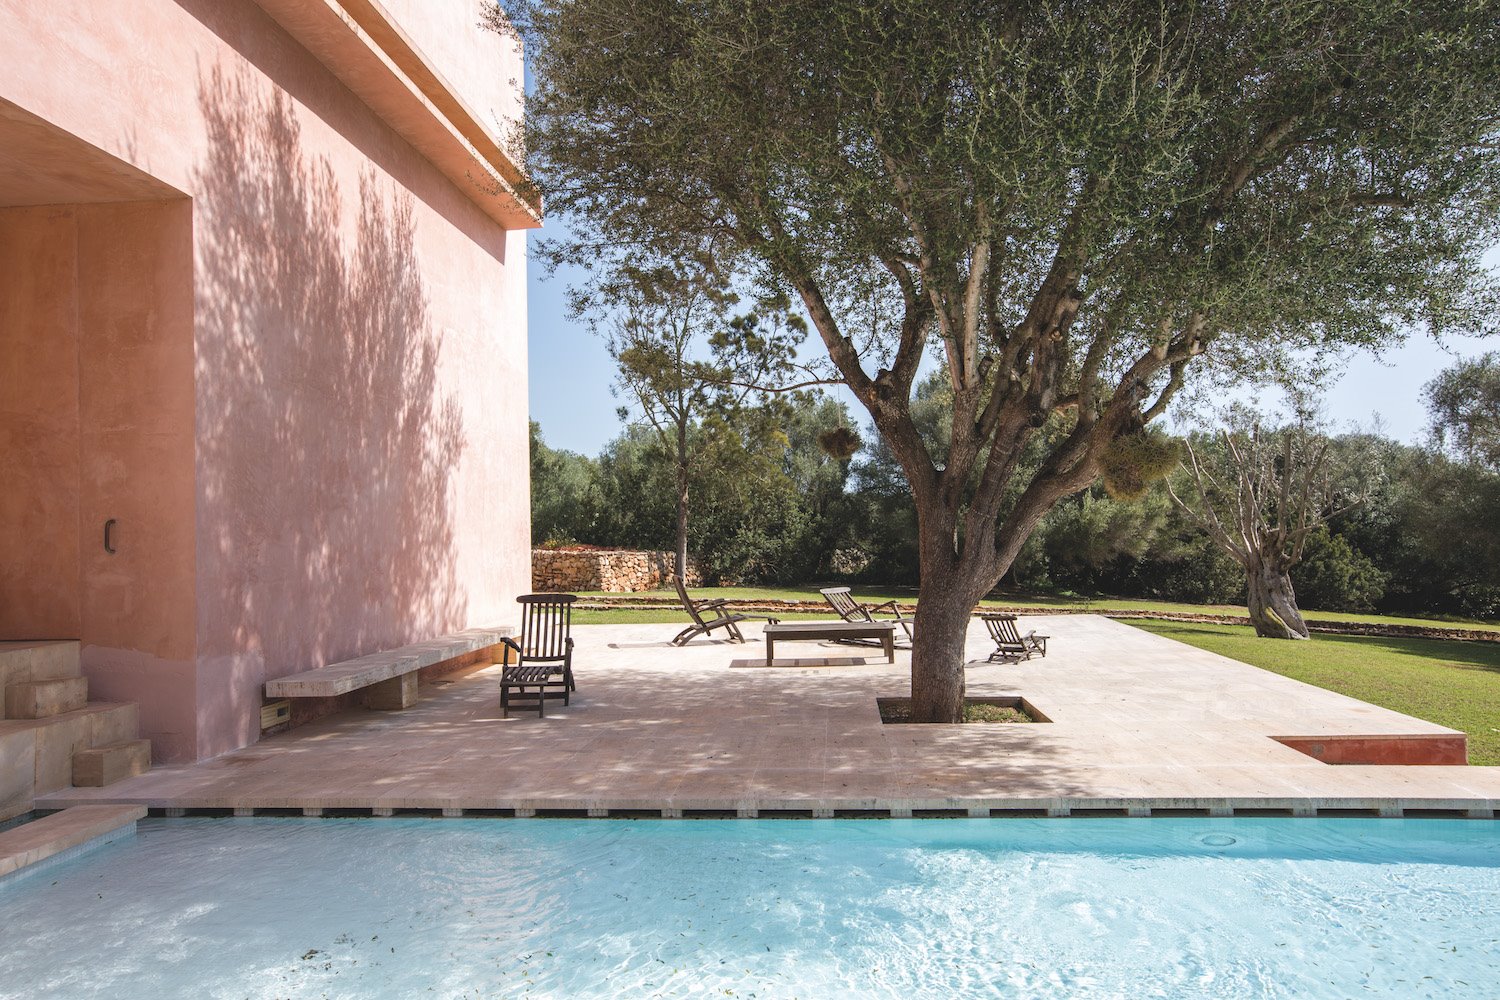 Casa de color rosa de claudio Silvestrin y John pawson en Mallorca arboles junto a la piscina